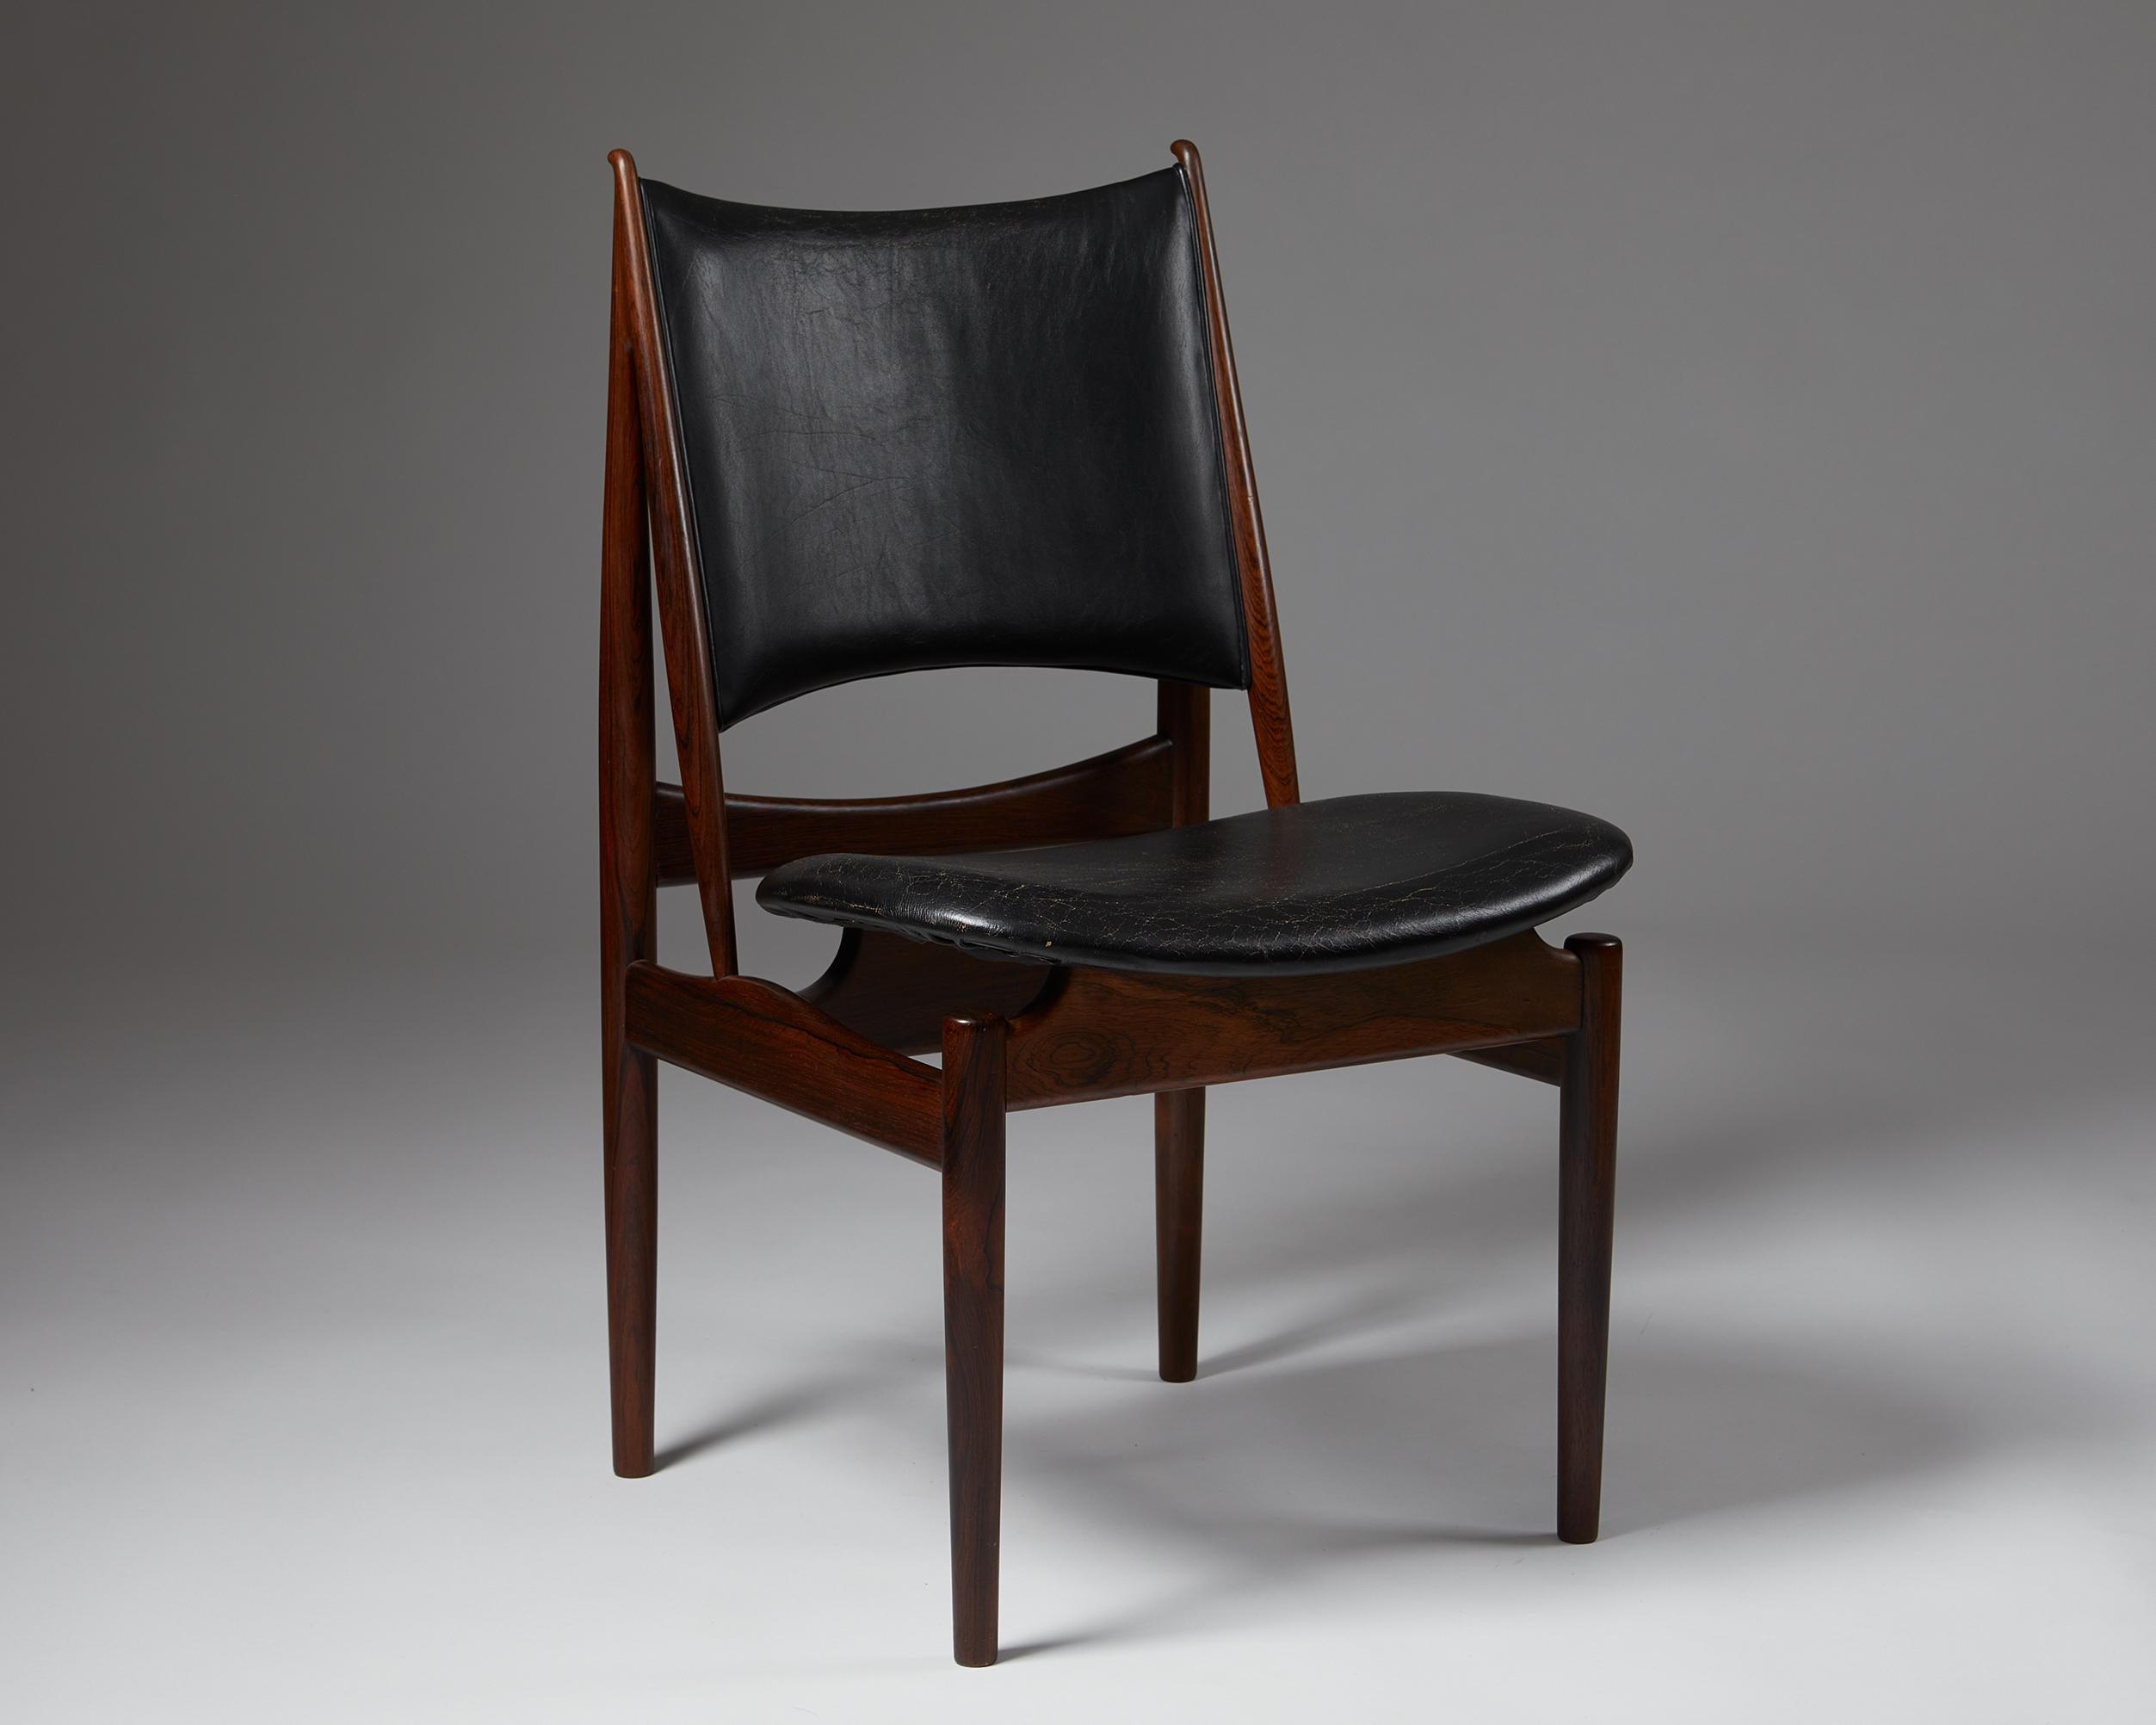 Chaise 'Egyptian' conçue par Finn Juhl pour Niels Vodder,
Danemark, 1949.

Fabriqué et estampillé par le fabricant.

Bois de rose brésilien et cuir.

Présenté pour la première fois en 1949 lors de l'exposition de la Guild des ébénistes à